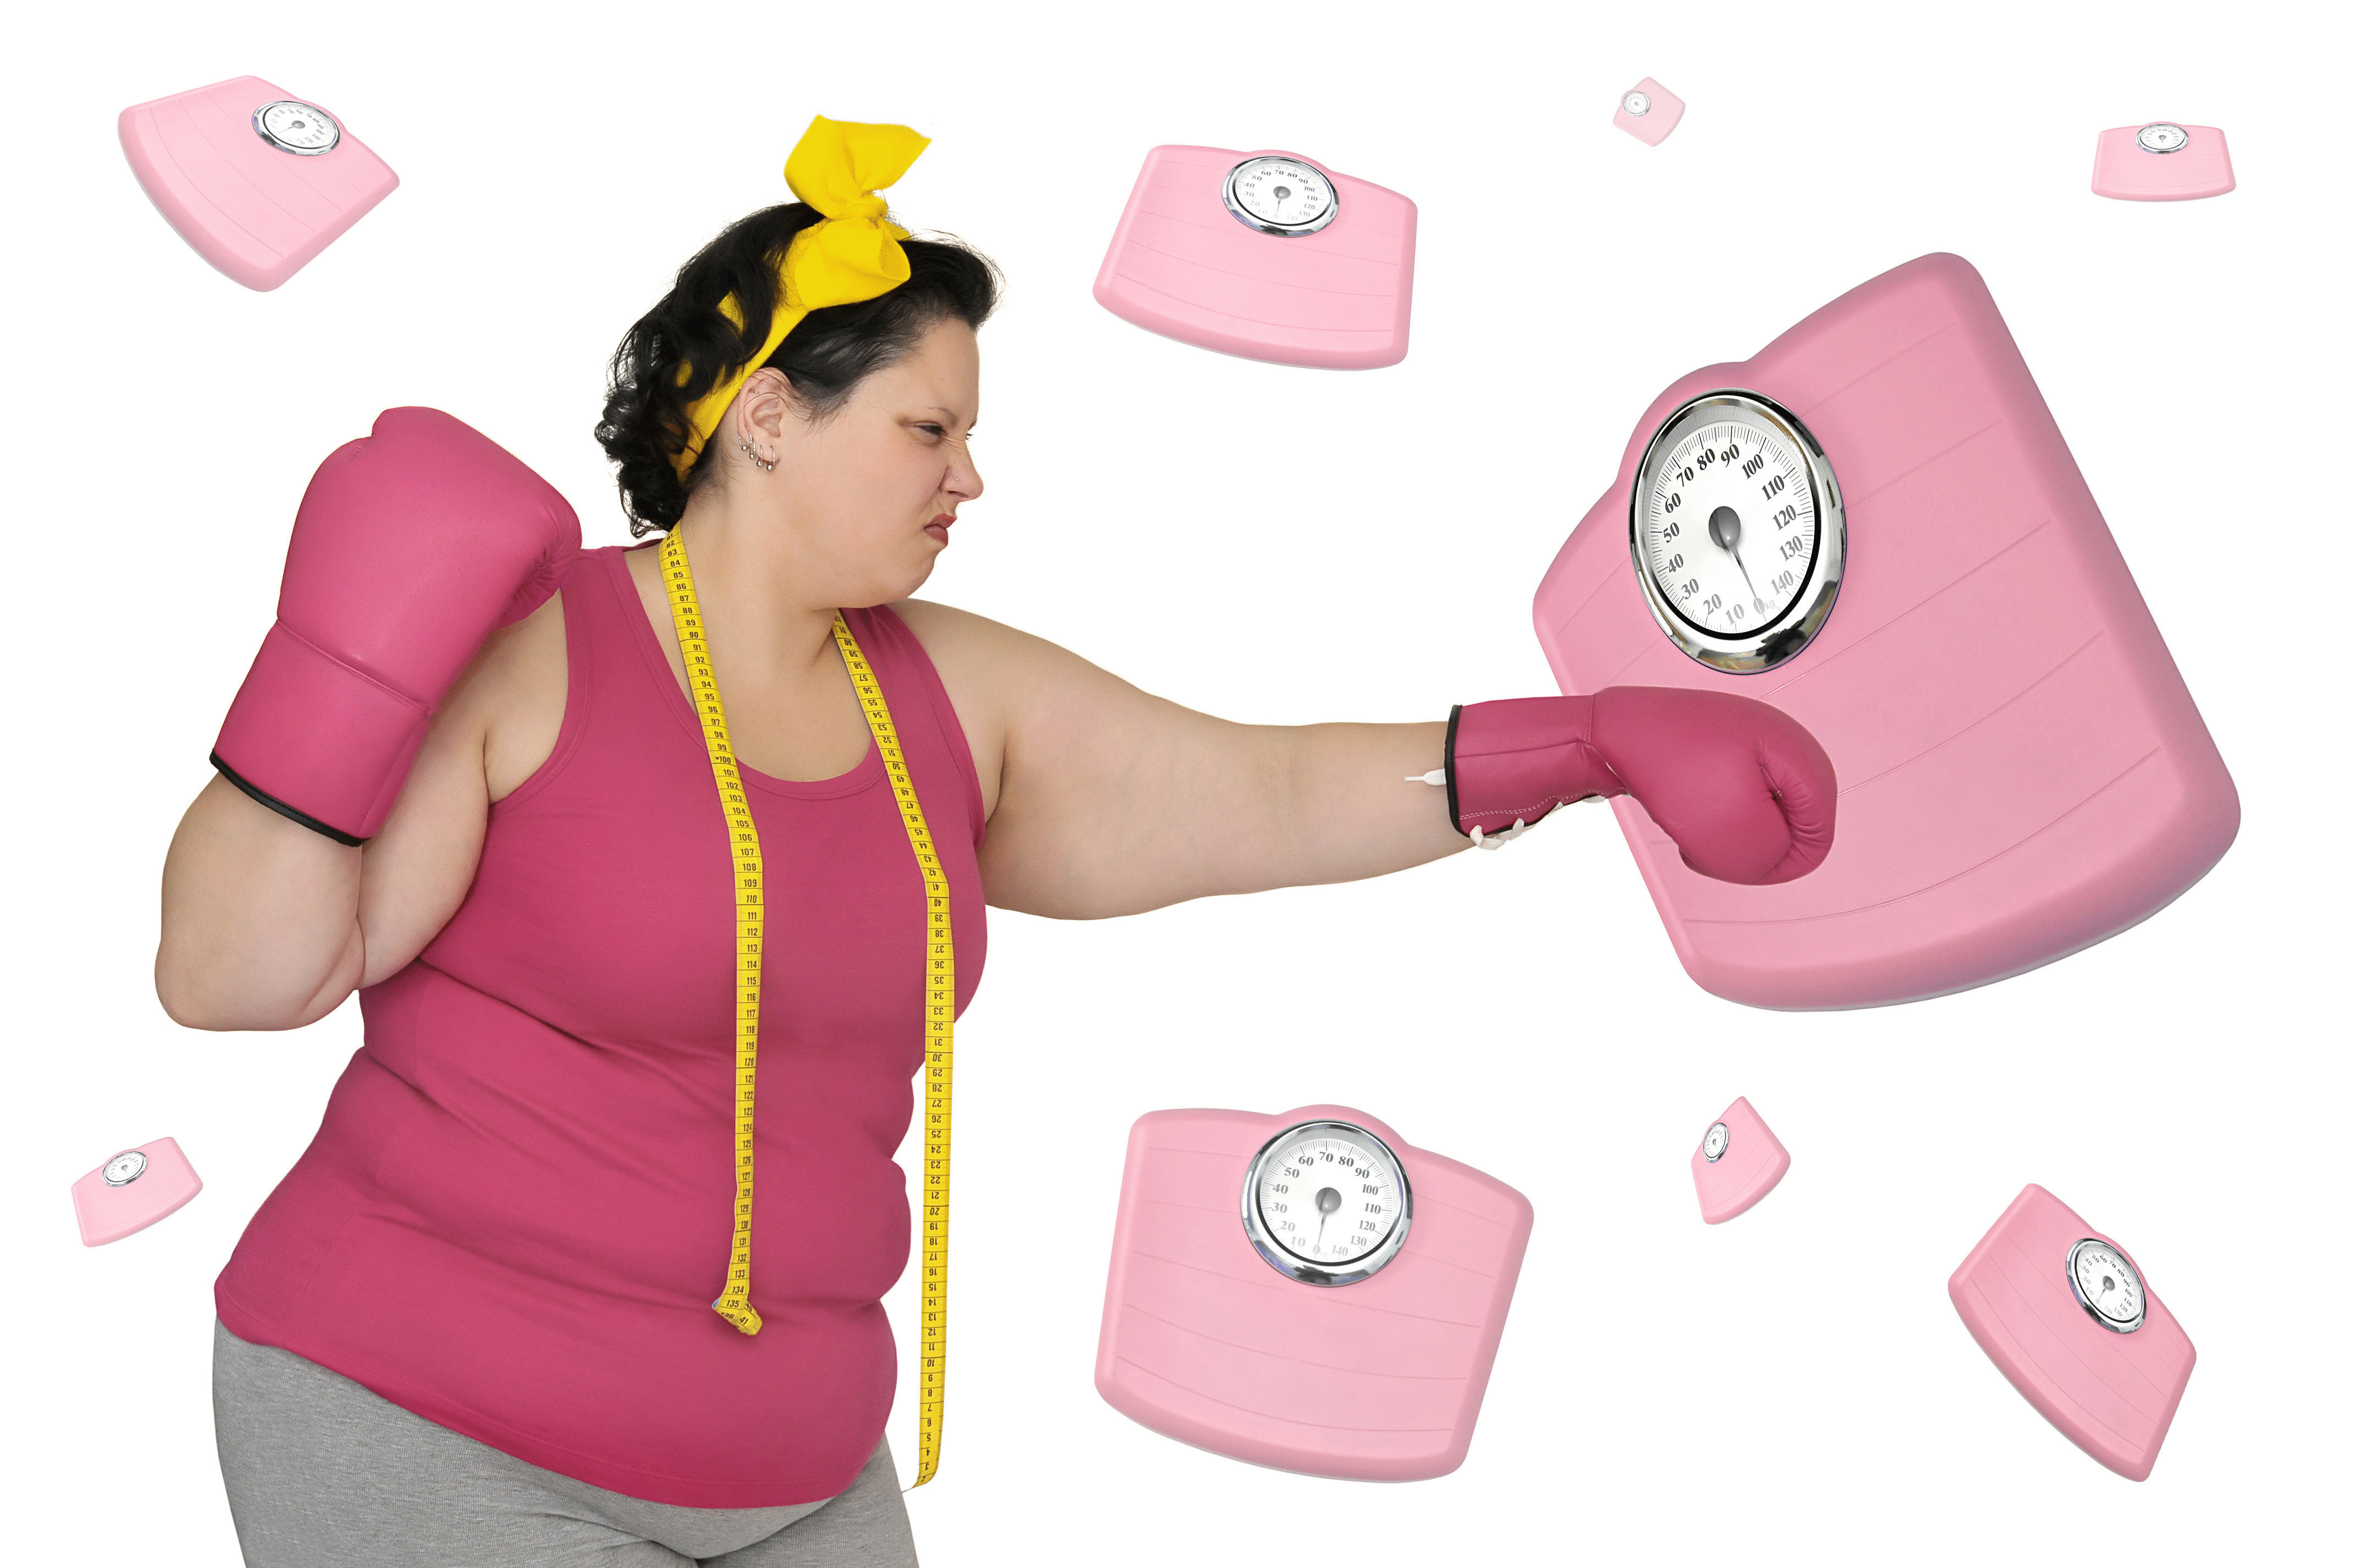 Кипишь кг. Лишний вес. Борьба с лишним весом. Женщина с лишком весом. Весы похудение.